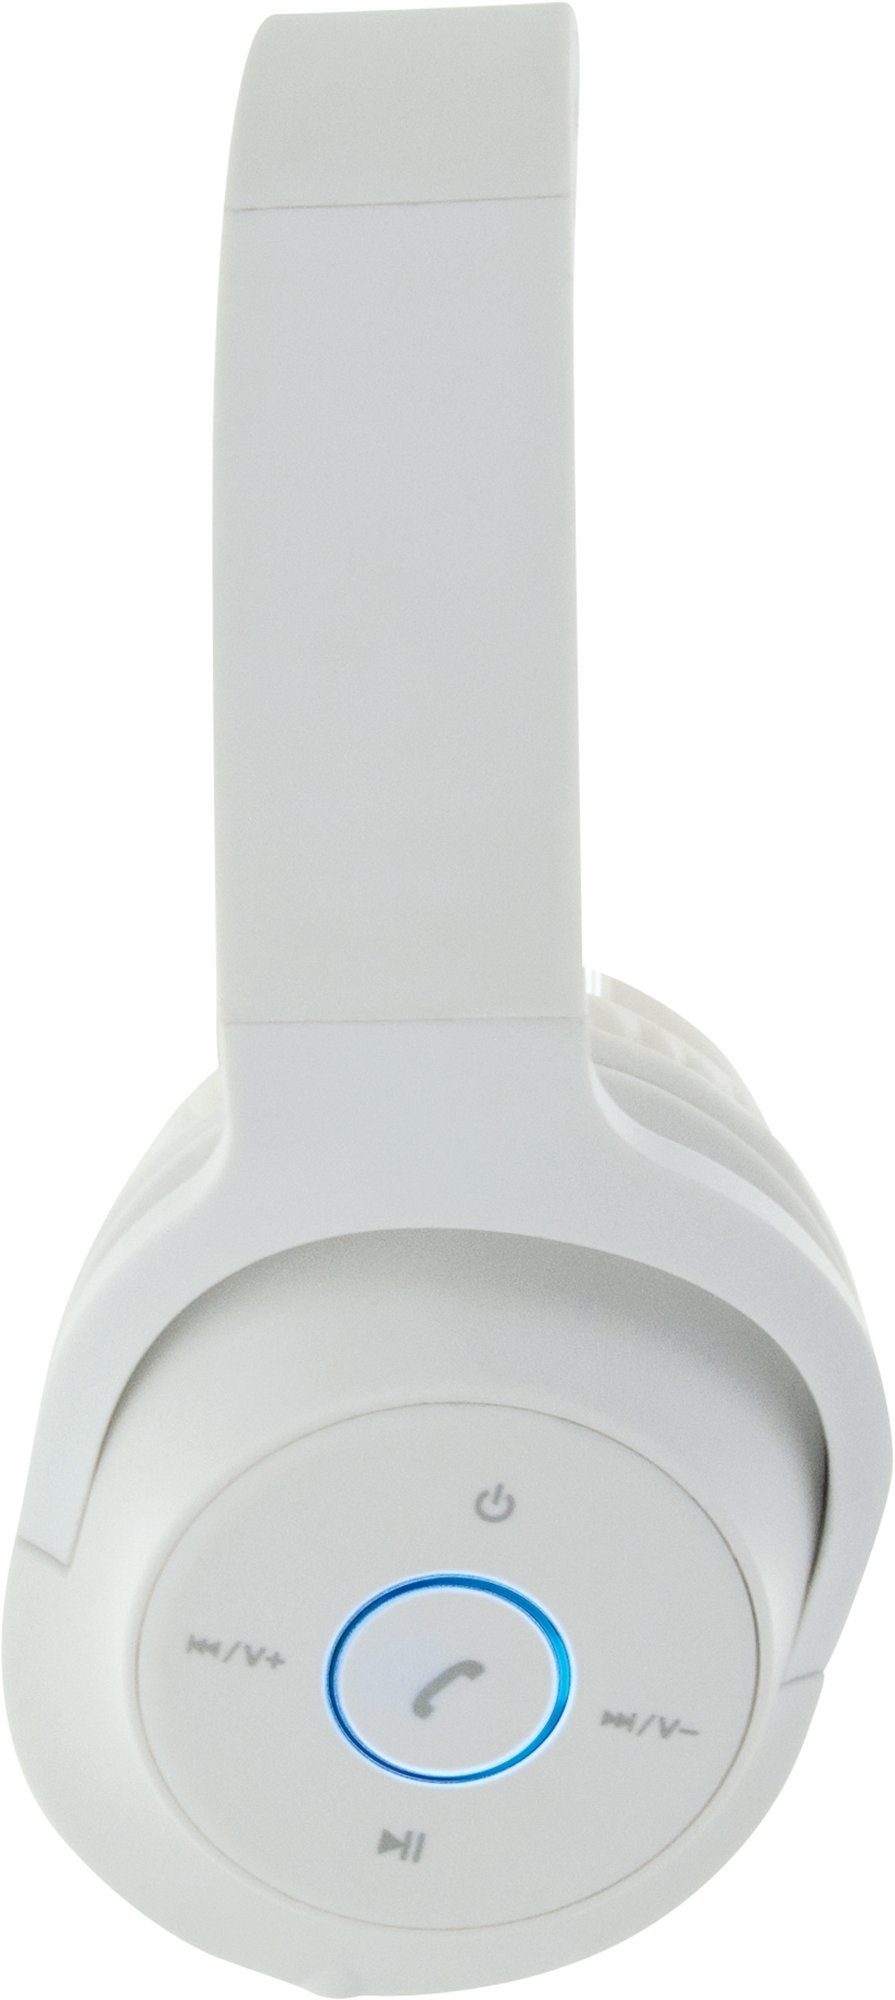 Schwaiger KH220BTW 512 einstellbare Kopfhörerbügel) Weiß (Bluetooth, Bluetooth-Kopfhörer